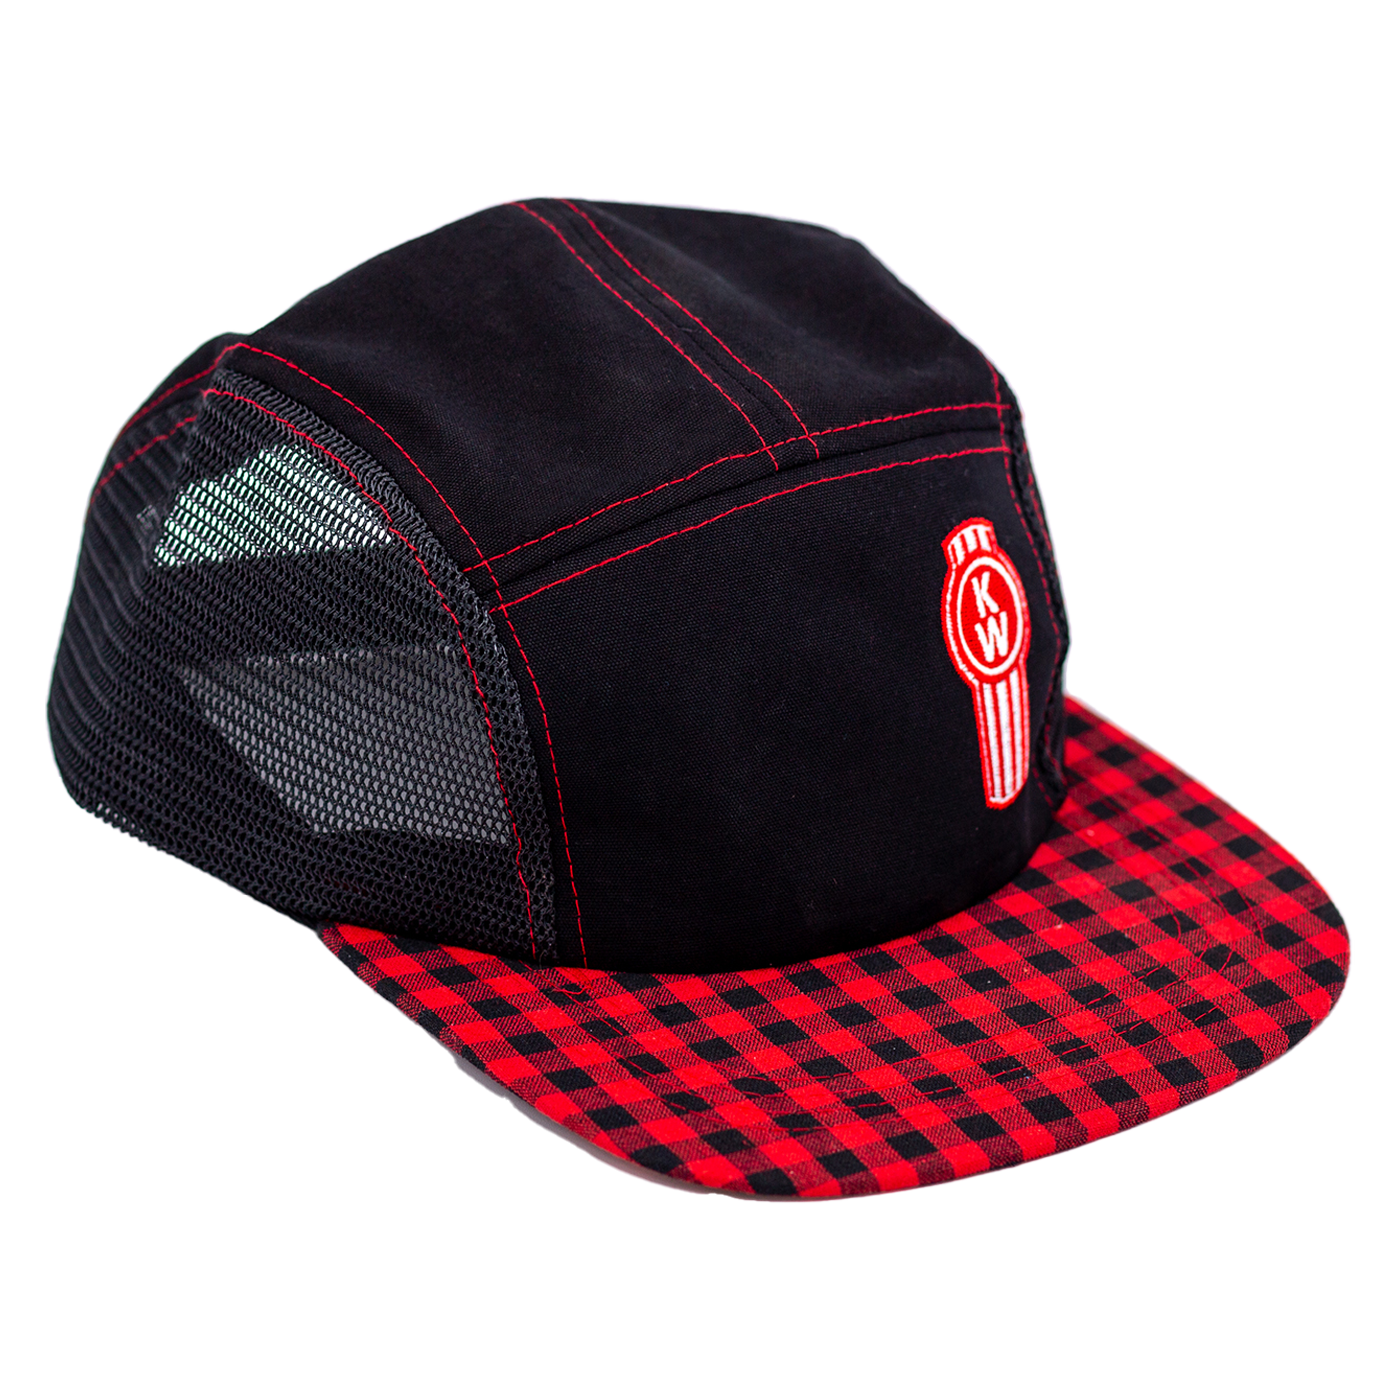 Red & Black Plaid Cap